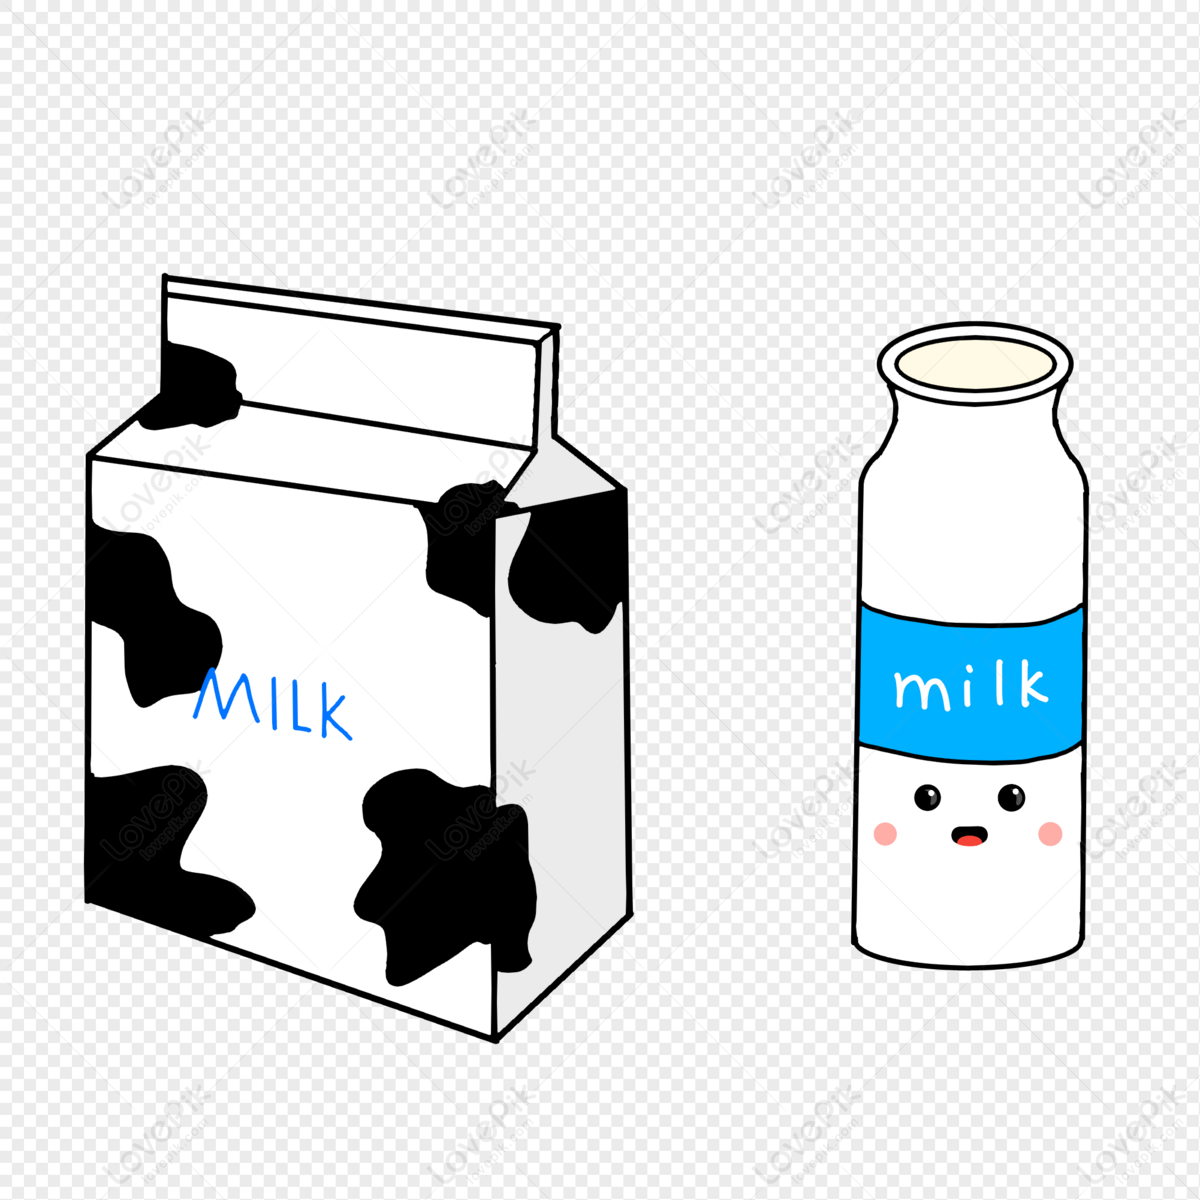 Hộp sữa cute có thể làm cho ngày của bạn đầy niềm vui. Với hình dáng và màu sắc độc đáo, mỗi hộp sẽ mang lại cho bạn một cảm giác ấn tượng. Hãy cùng xem những hộp sữa cute để tạm quên đi những căng thẳng của cuộc sống.